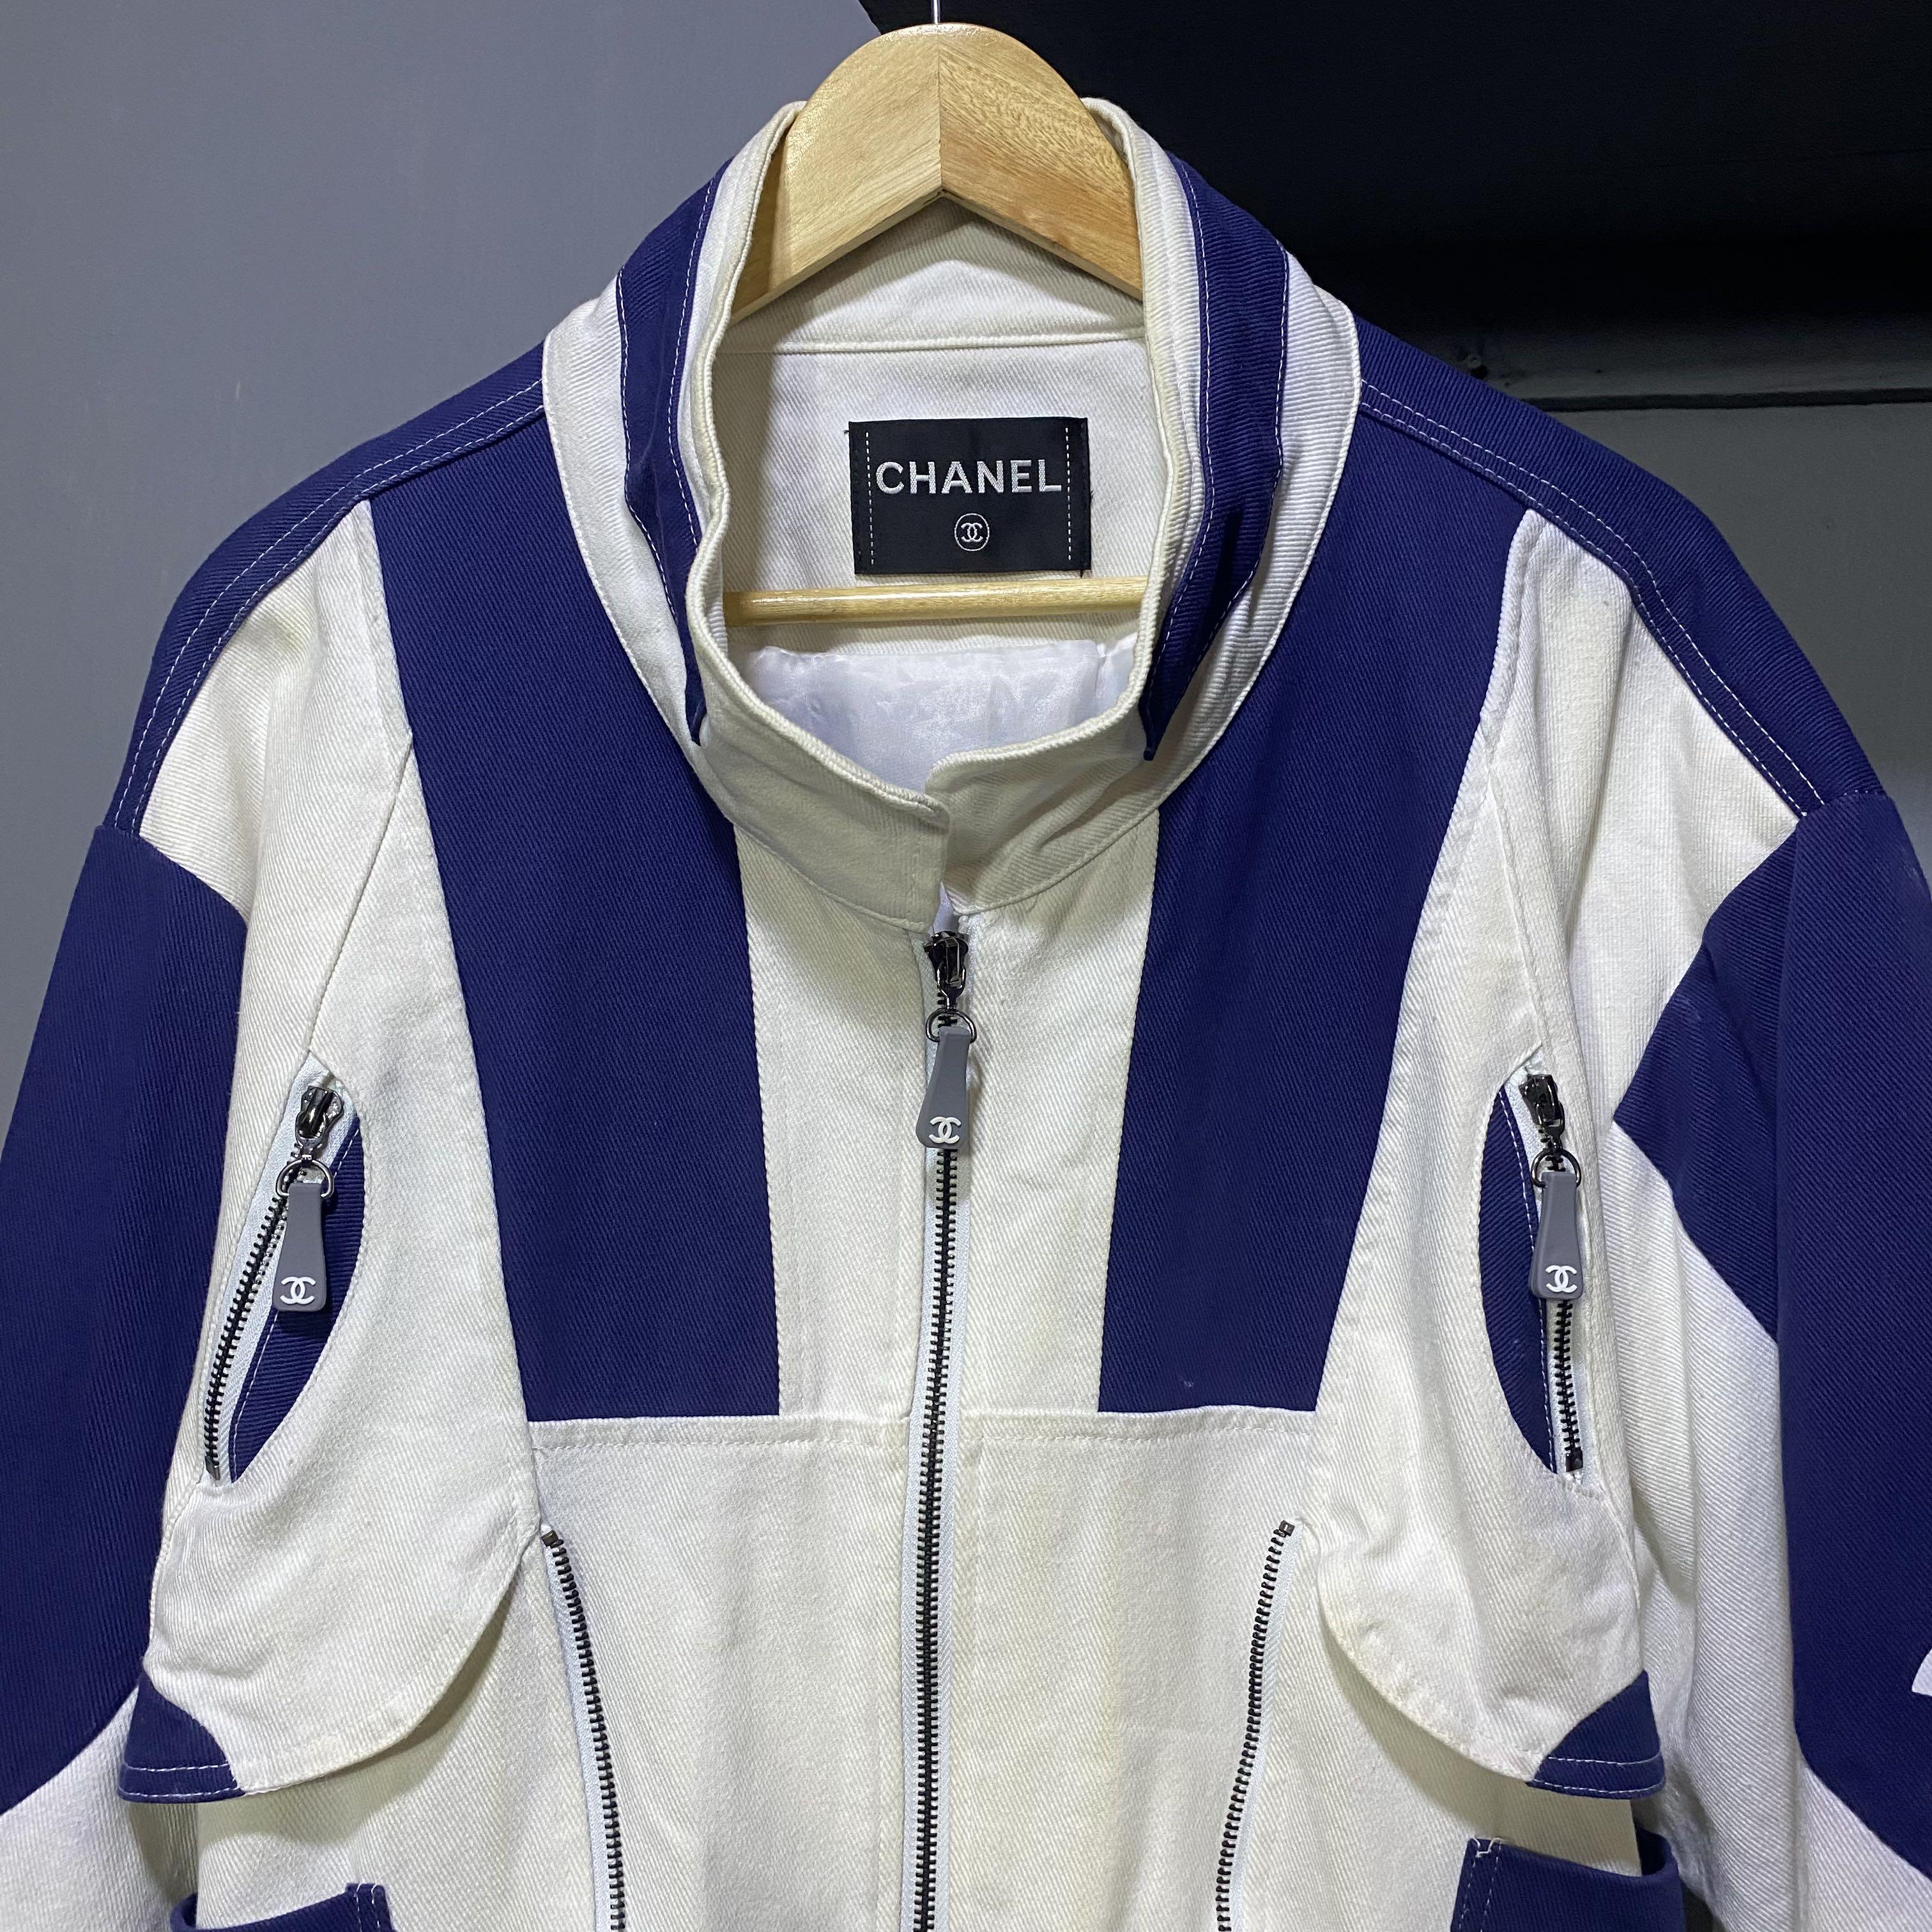 Chanel vintage denim and sequin logo pocket jacket size 40 US 4/6  1195.00❌sold❌